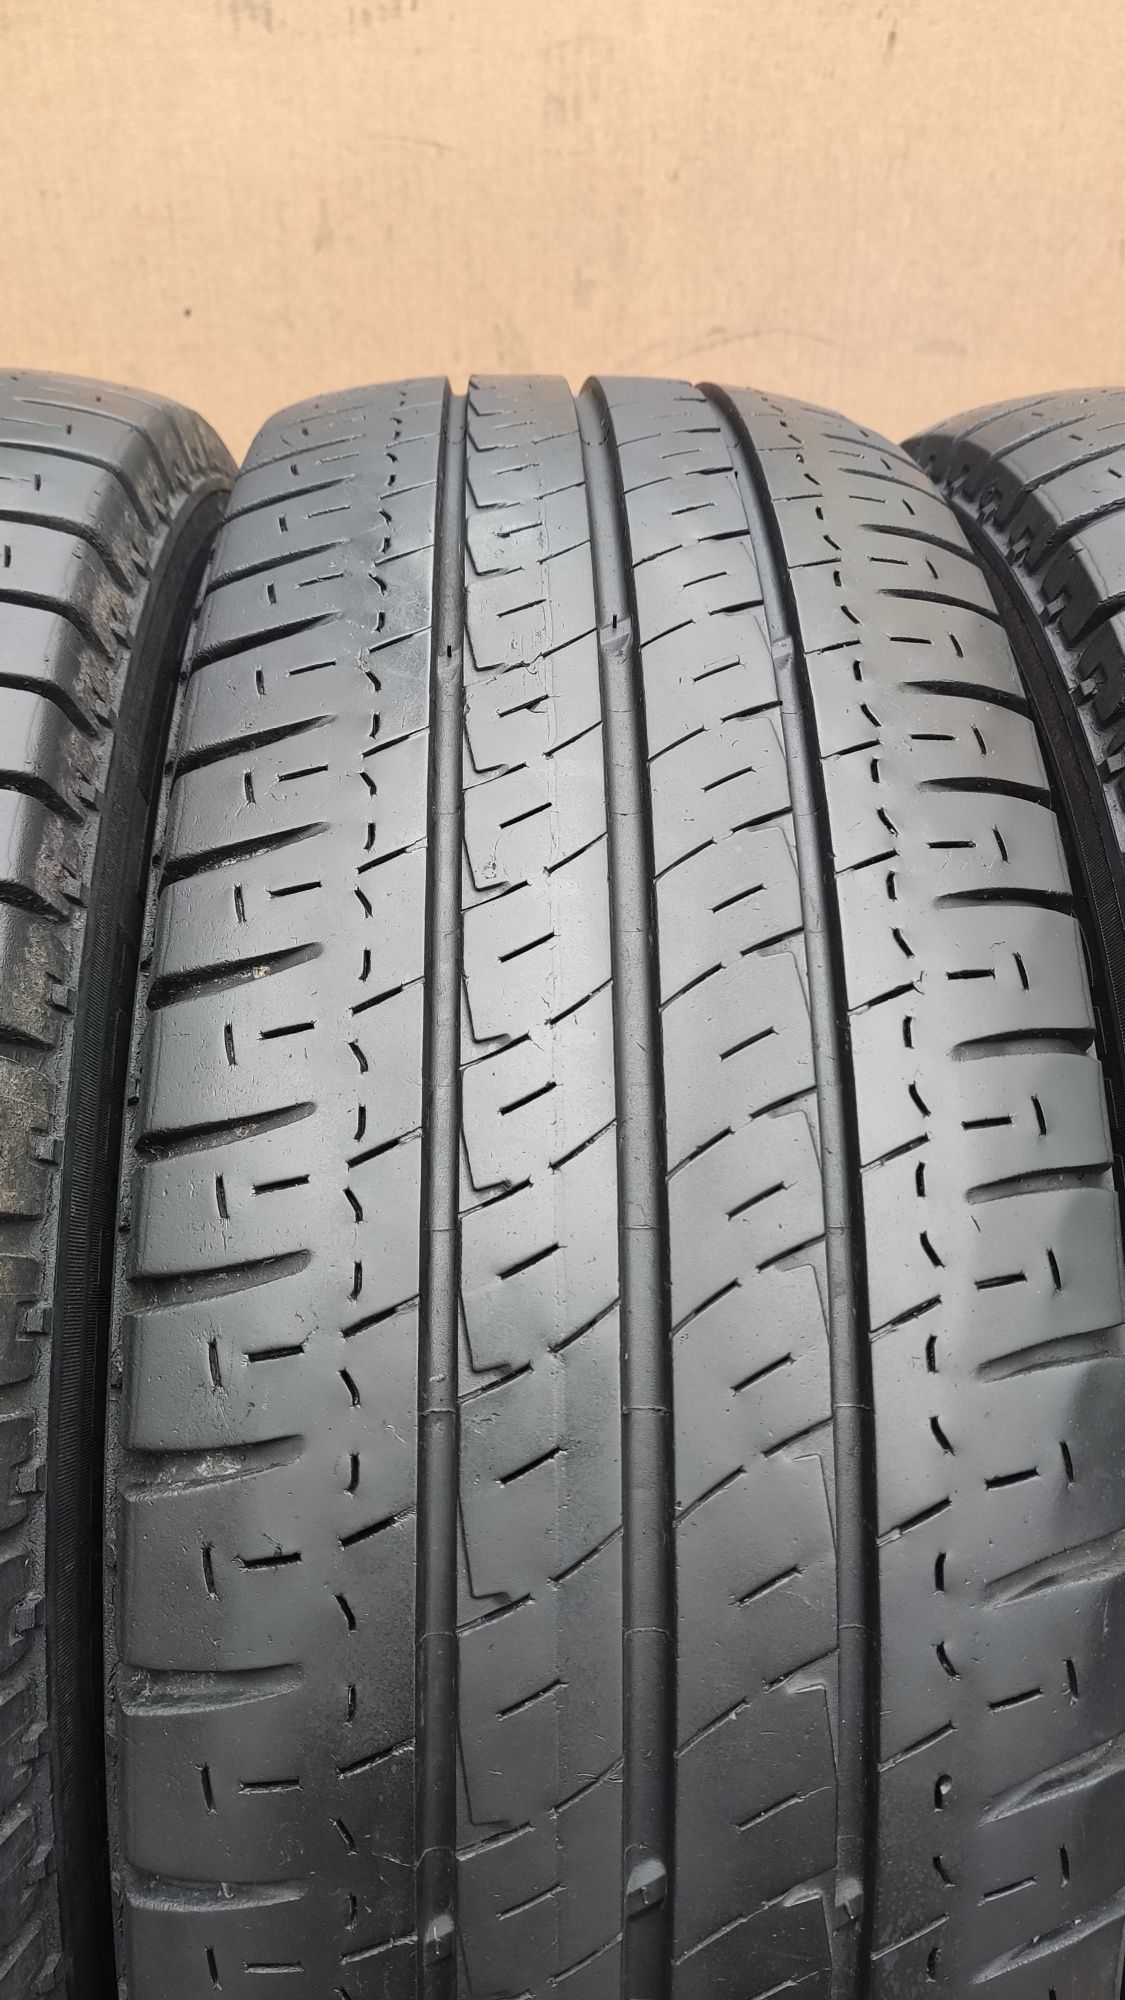 летни бусови гуми 215/65/16C Michelin Agilis 8PR
около 7мм грайфер
Доб